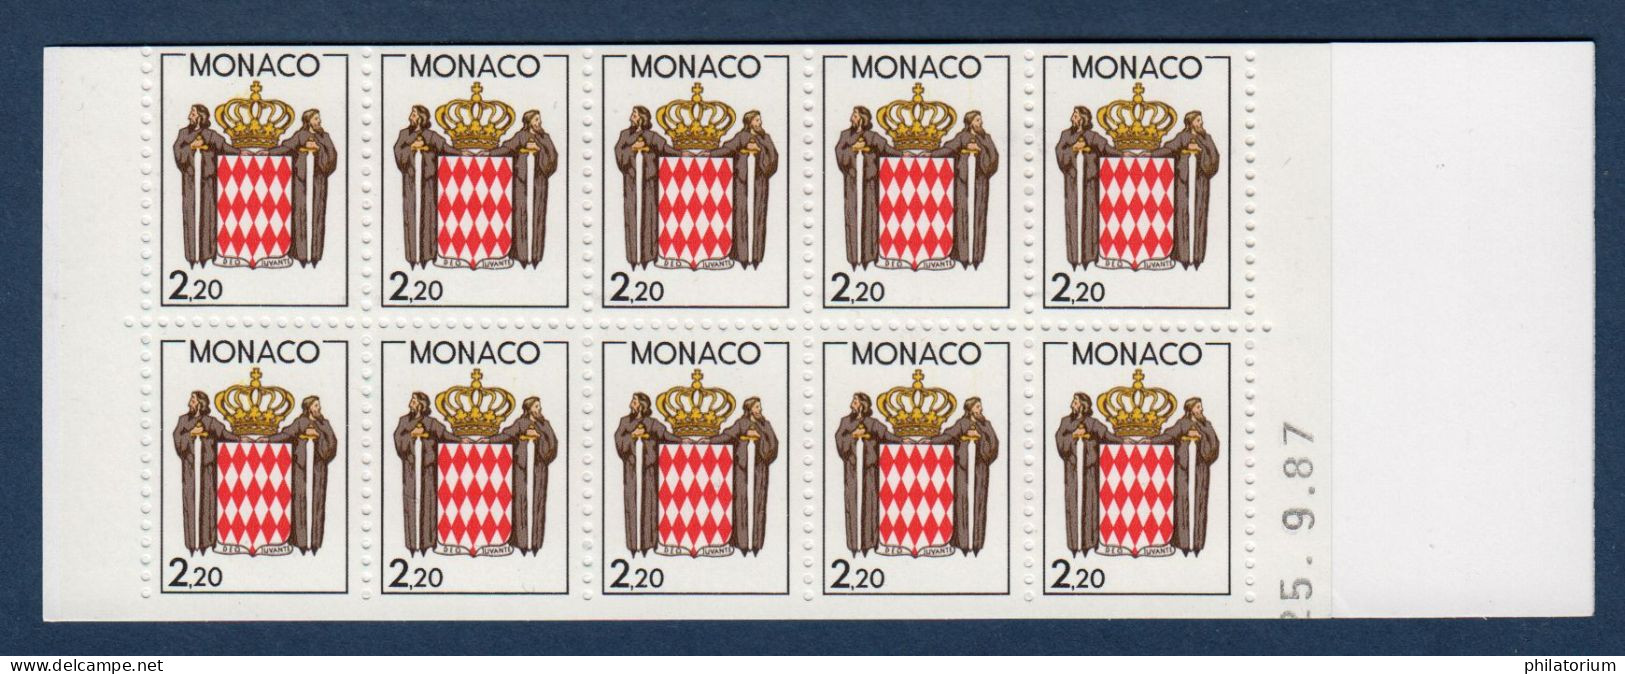 Monaco Timbre Neuf, Yv 1613, Carnet Usage Courant Non Plié, Daté 25.9.87, - Libretti